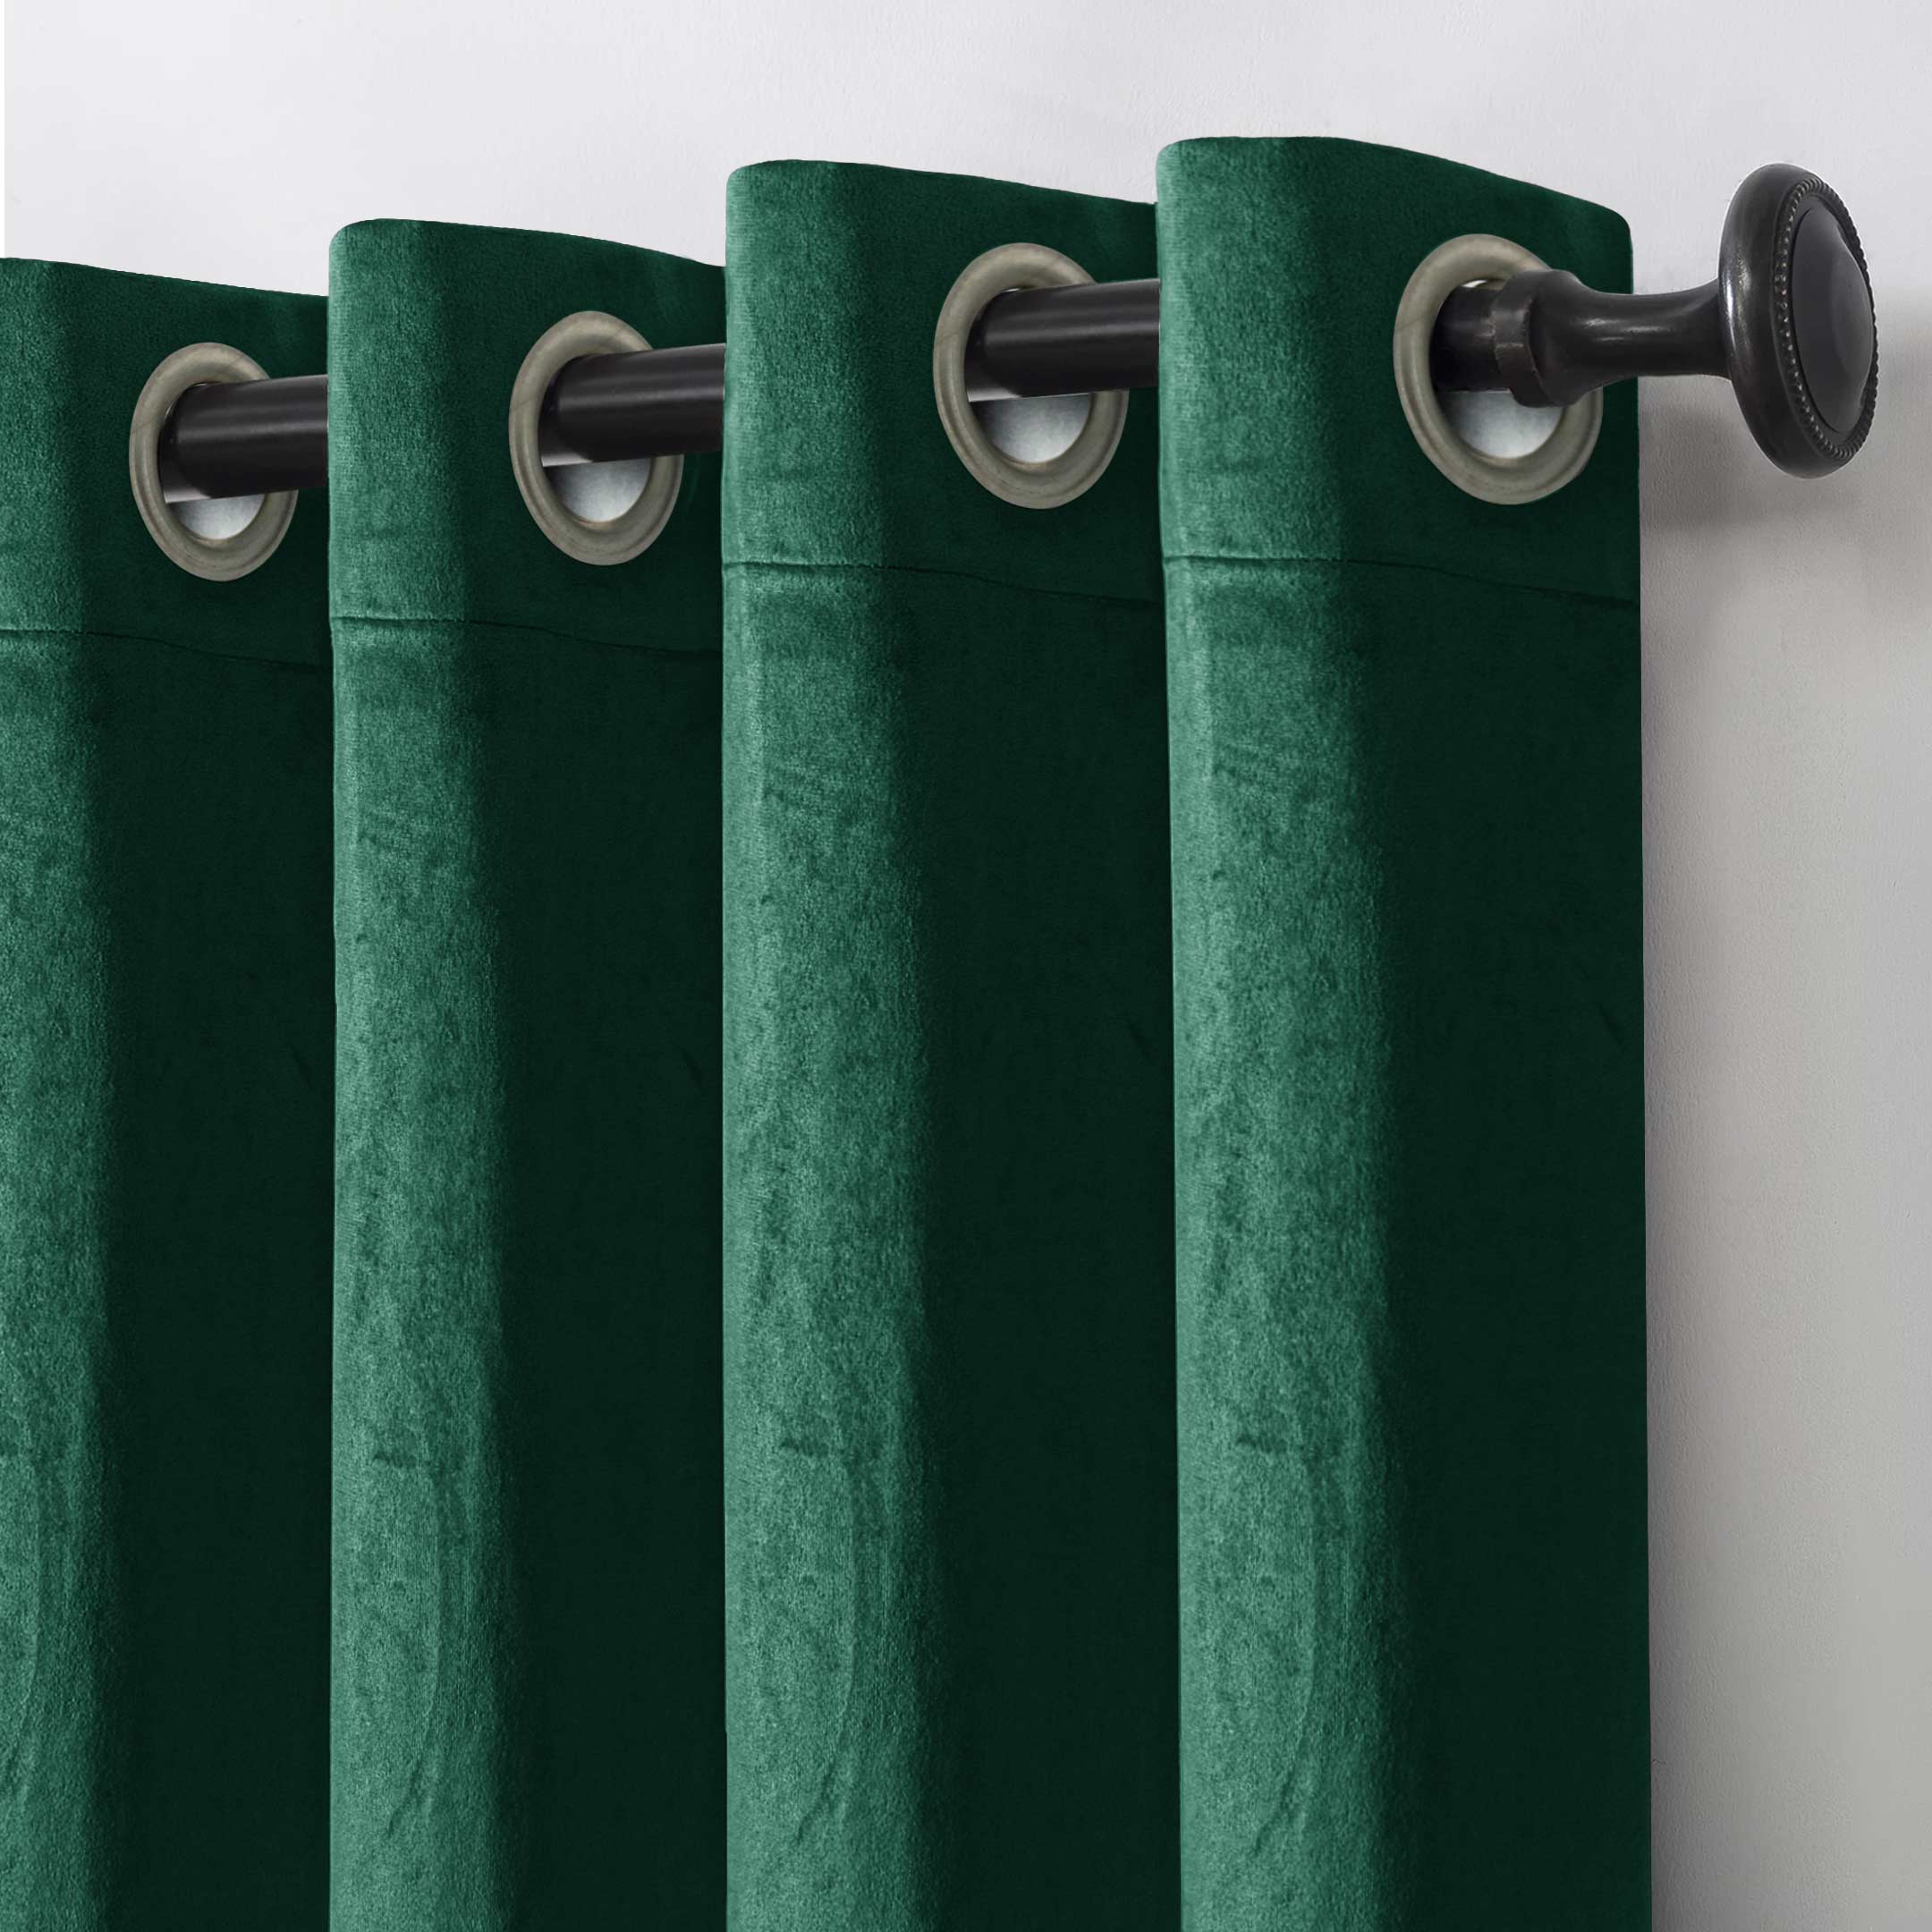 Ultra soft Grommet Top Velvet Curtain Green